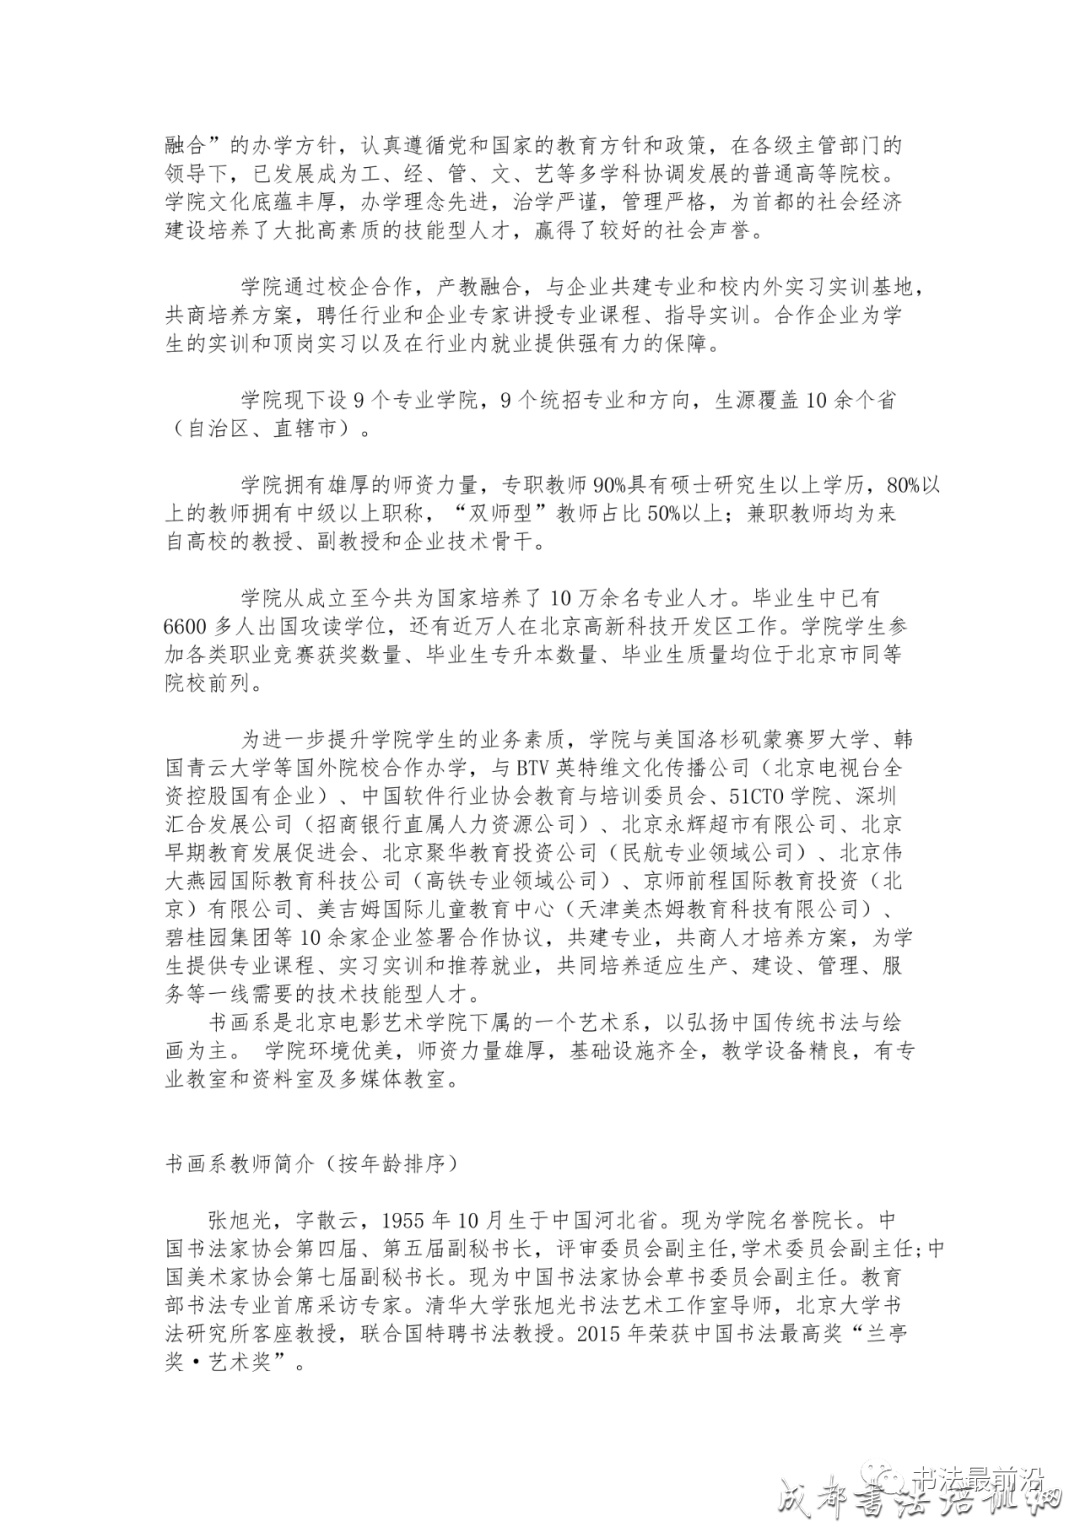 校考快讯 | 北京科技经营管理学院电影艺术学院2020年书画系专业考试调整方案